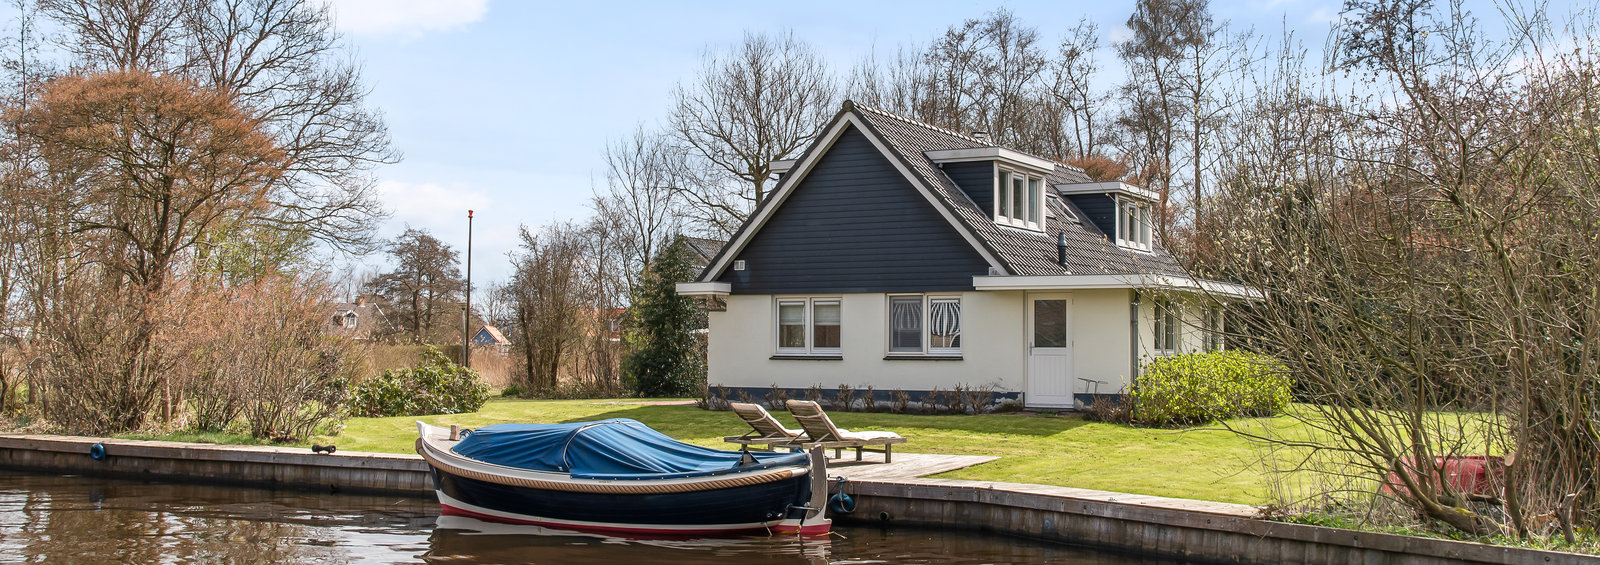 Vrijstaand vakantiehuis direct aan het water in Friesland